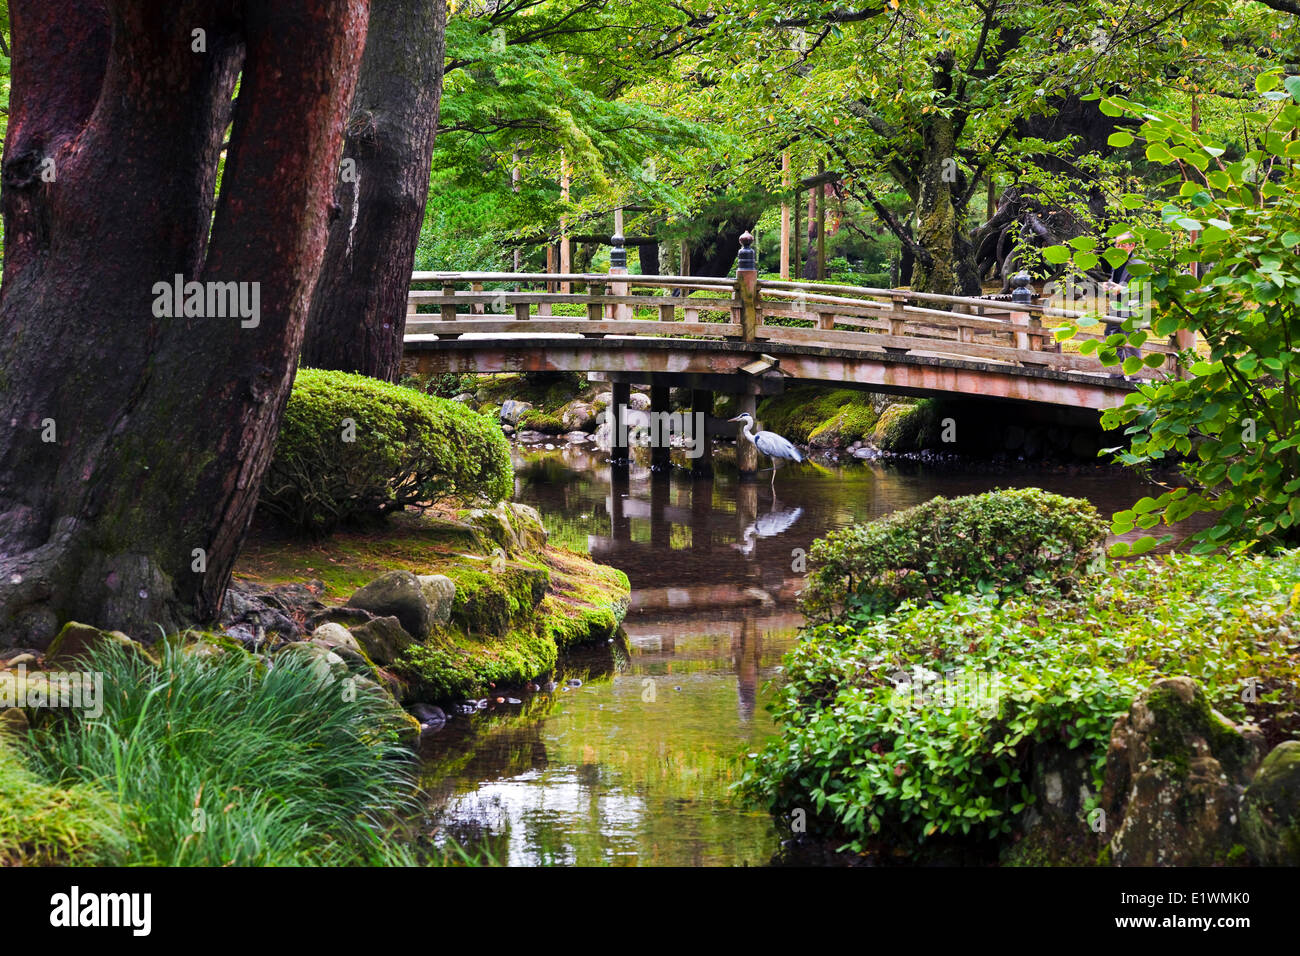 L'un des plus beaux jardins du Japon, situé dans la région de Kanazawa Kenrokuen,, Ishikawa, Japon Banque D'Images